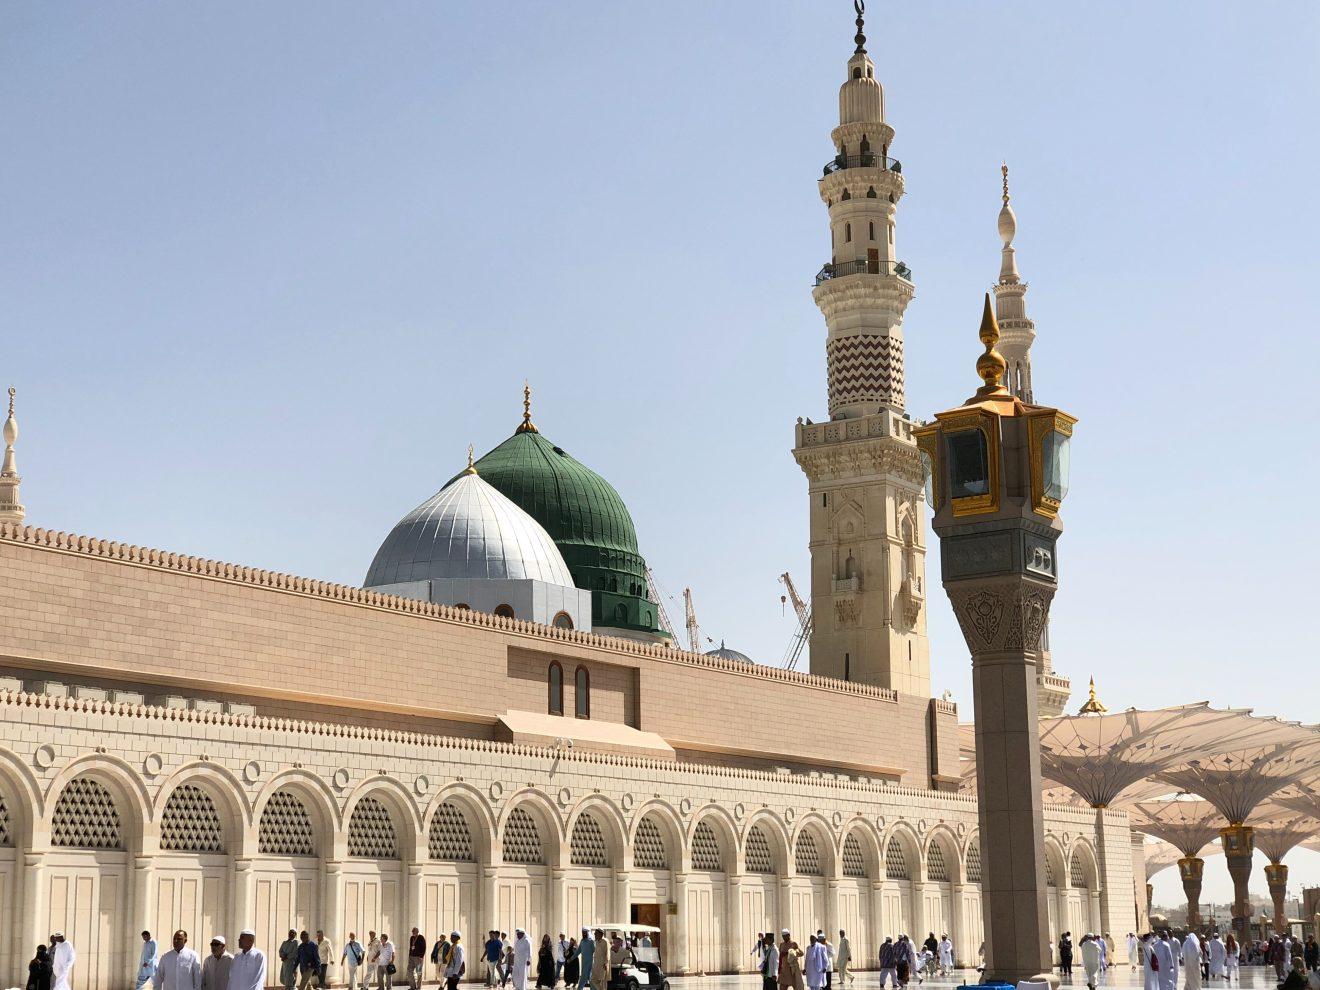 masjid nabawi virtual tour link